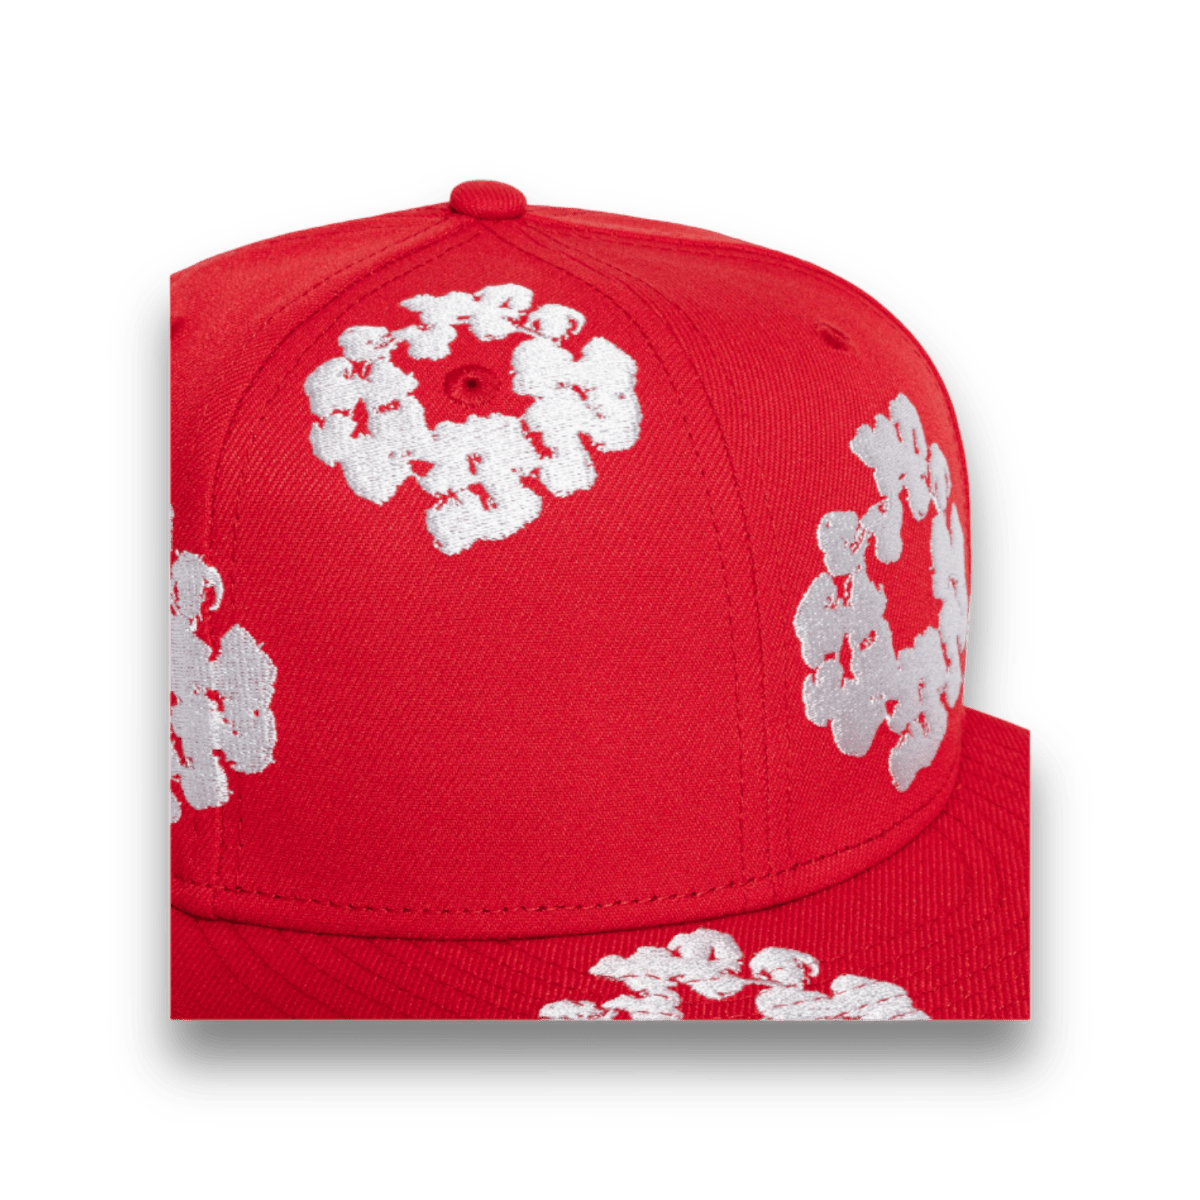 Denim Tears New Era Cotton Wreath Hat 59/50 - Red - Headwear - Jawns on Fire Sneakers & Streetwear